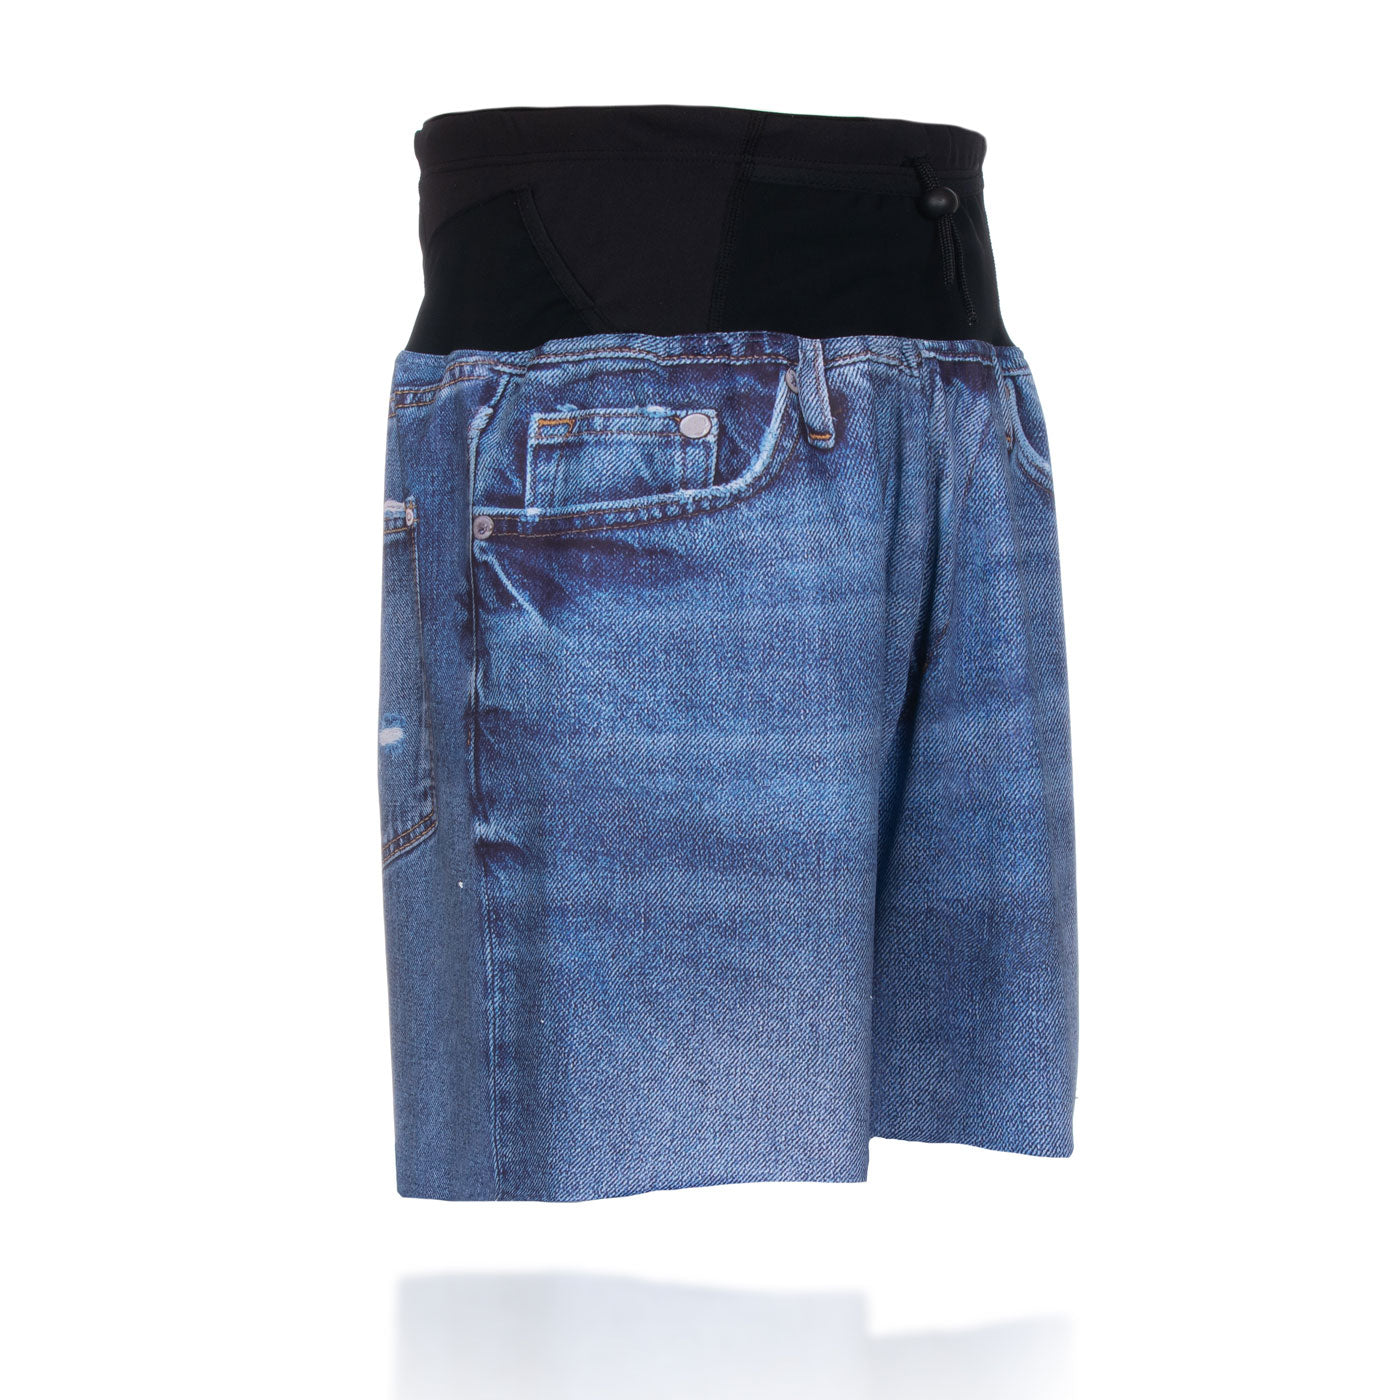 Pantalón corto - blue jeans